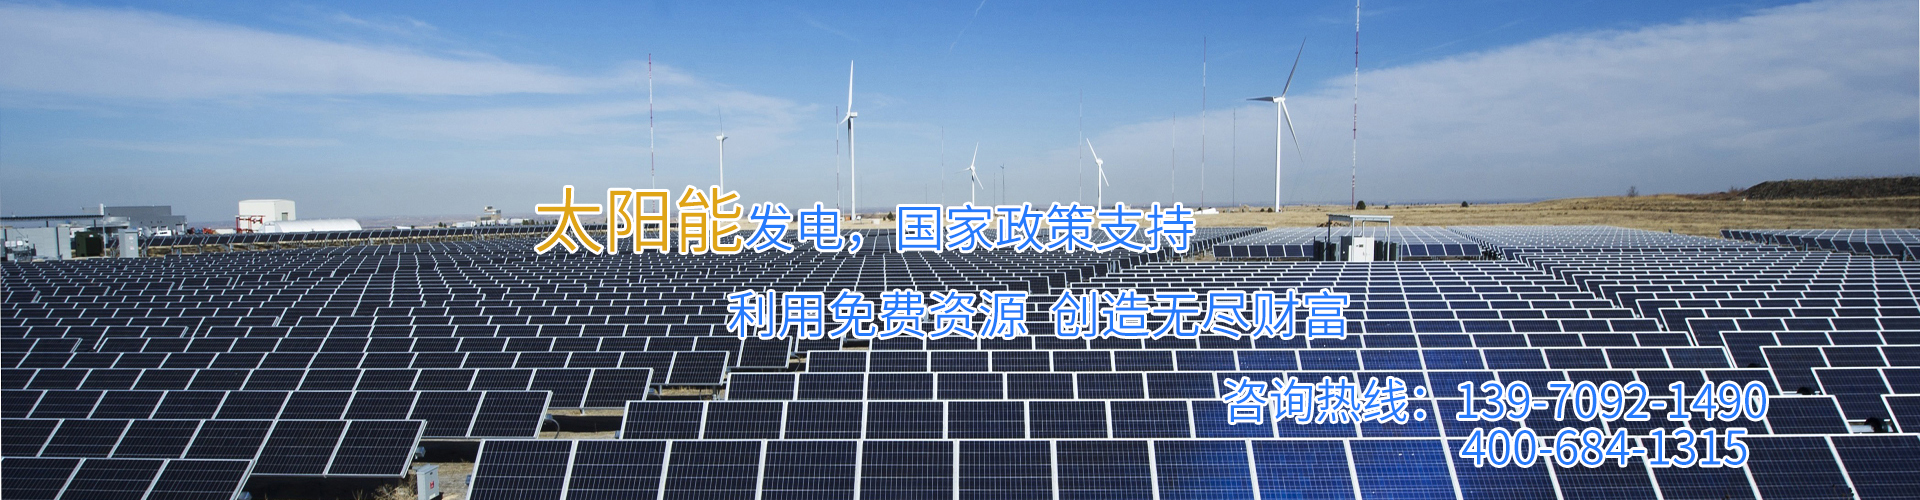 江西南昌屋頂太陽能光伏發電—江西艾能科技有限公司